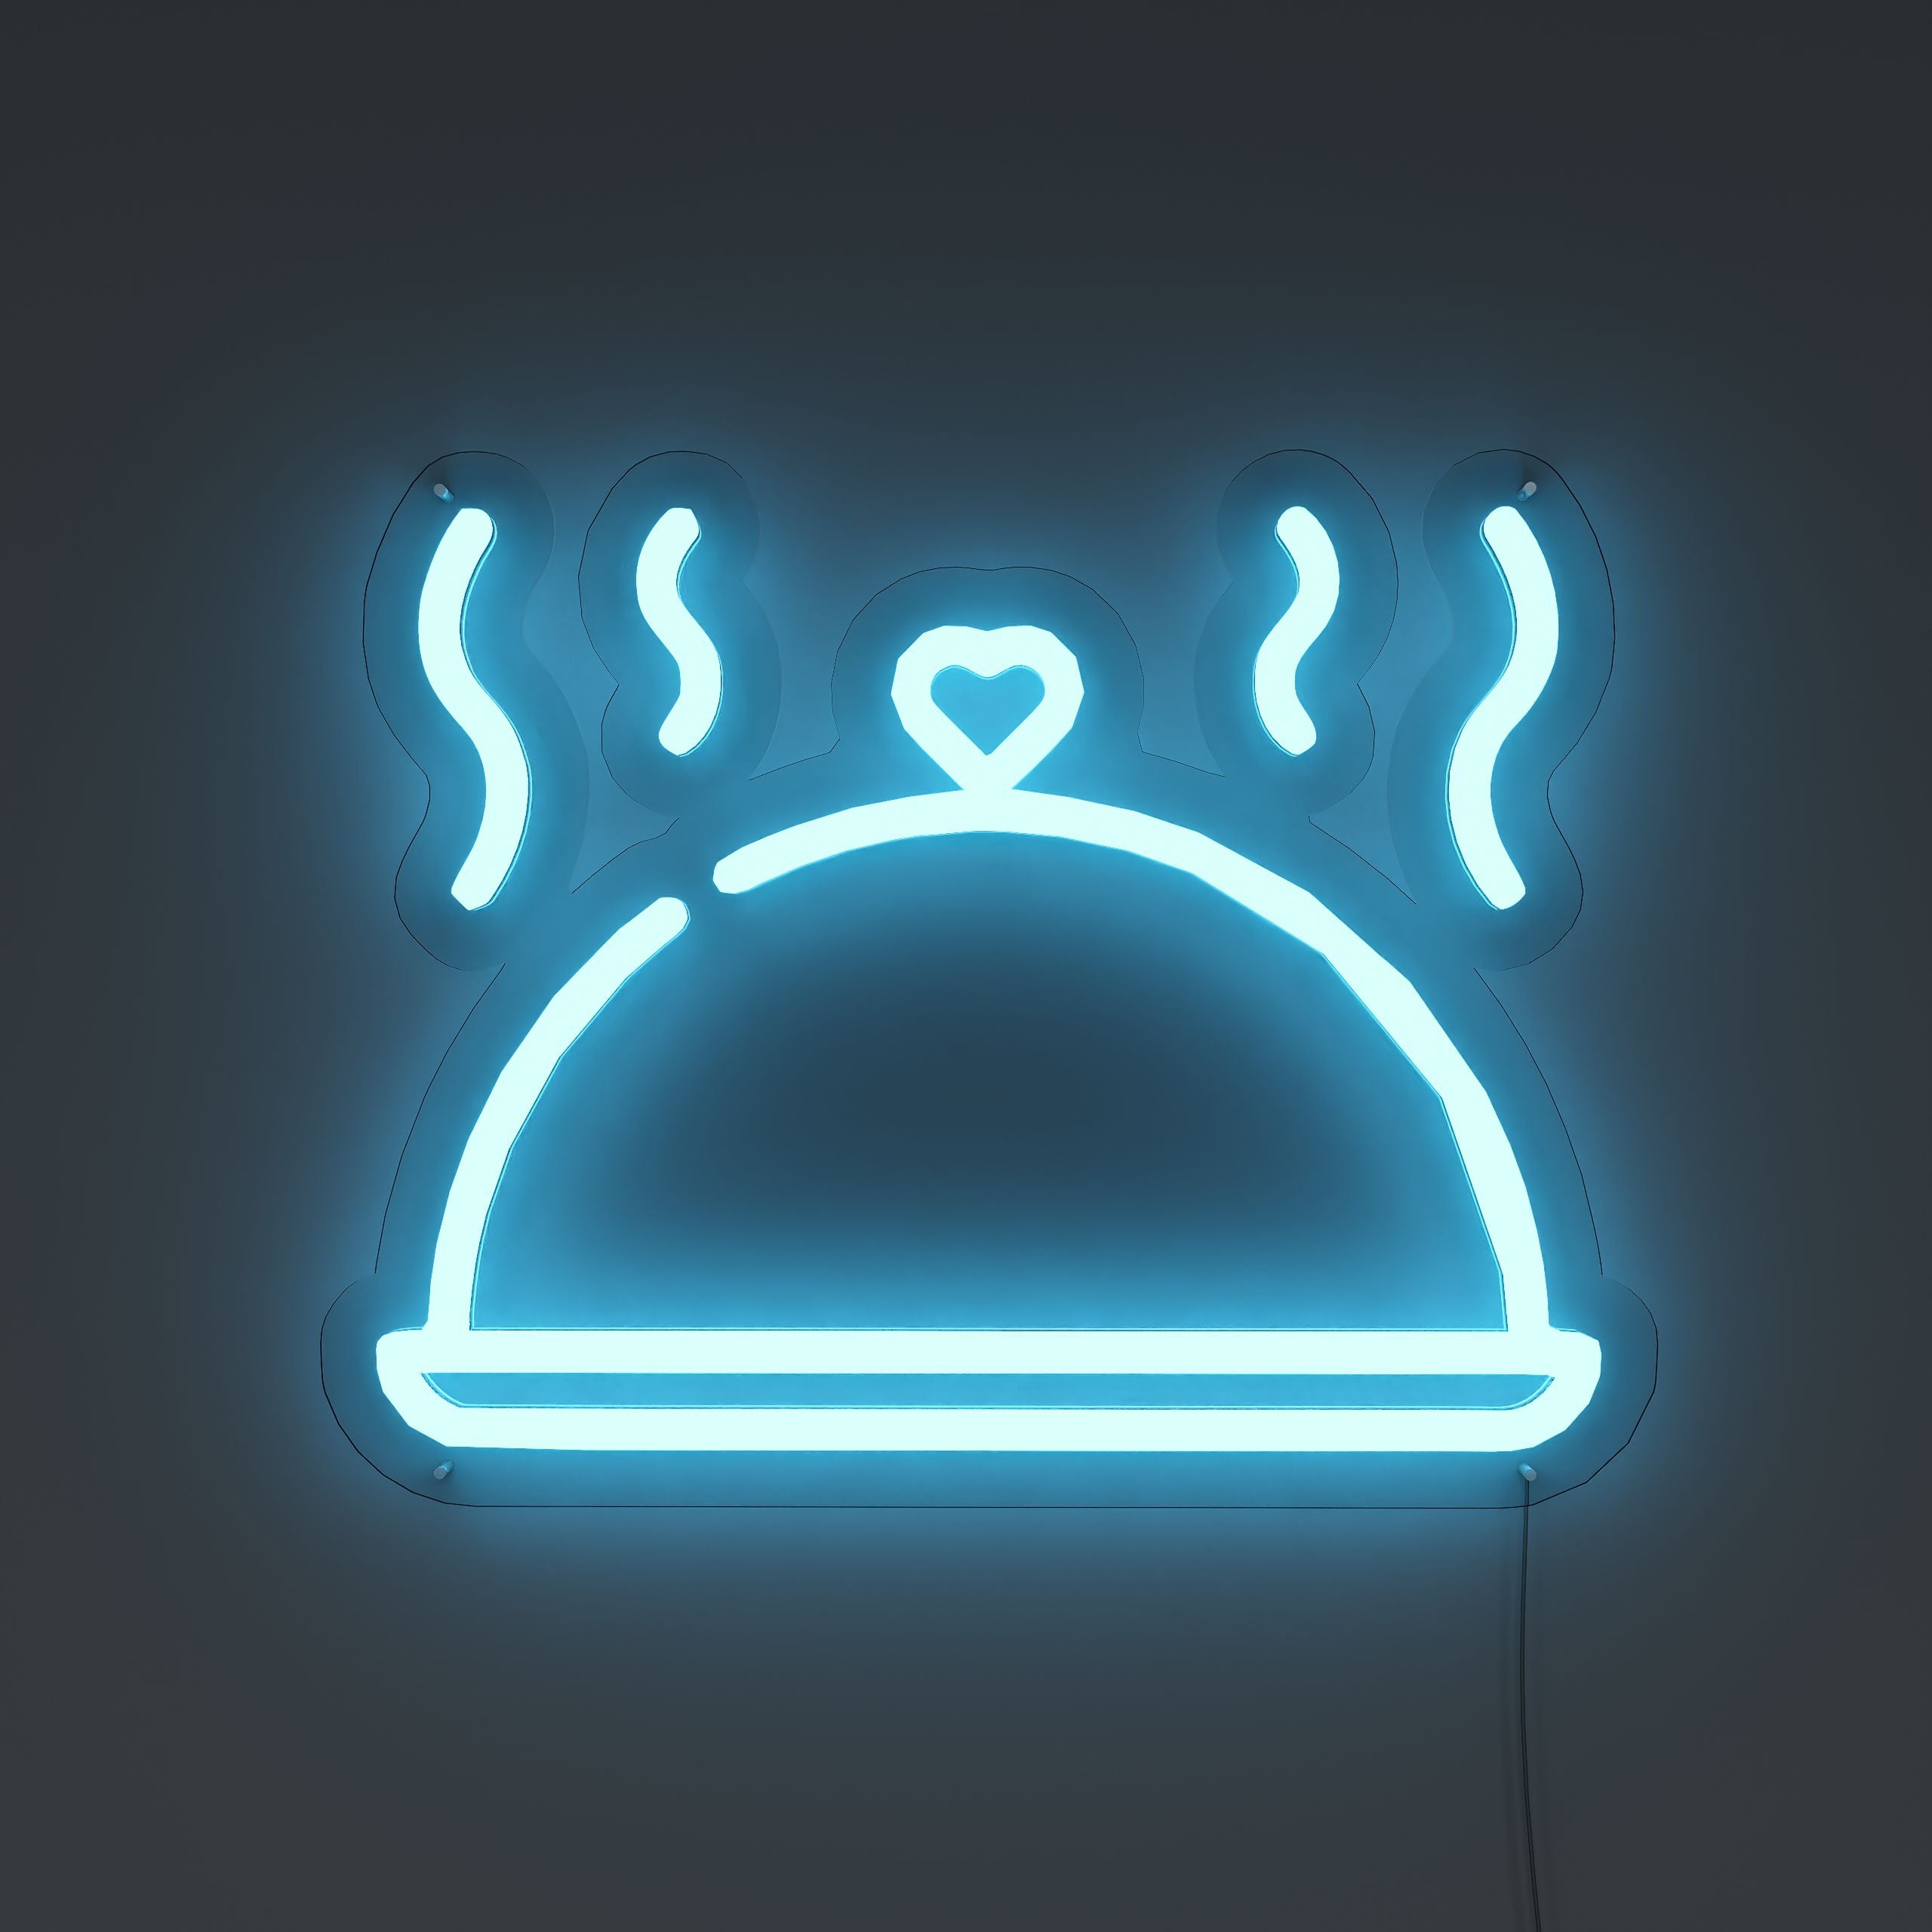 Cuisine-Illumination-Neon-Sign-Lite